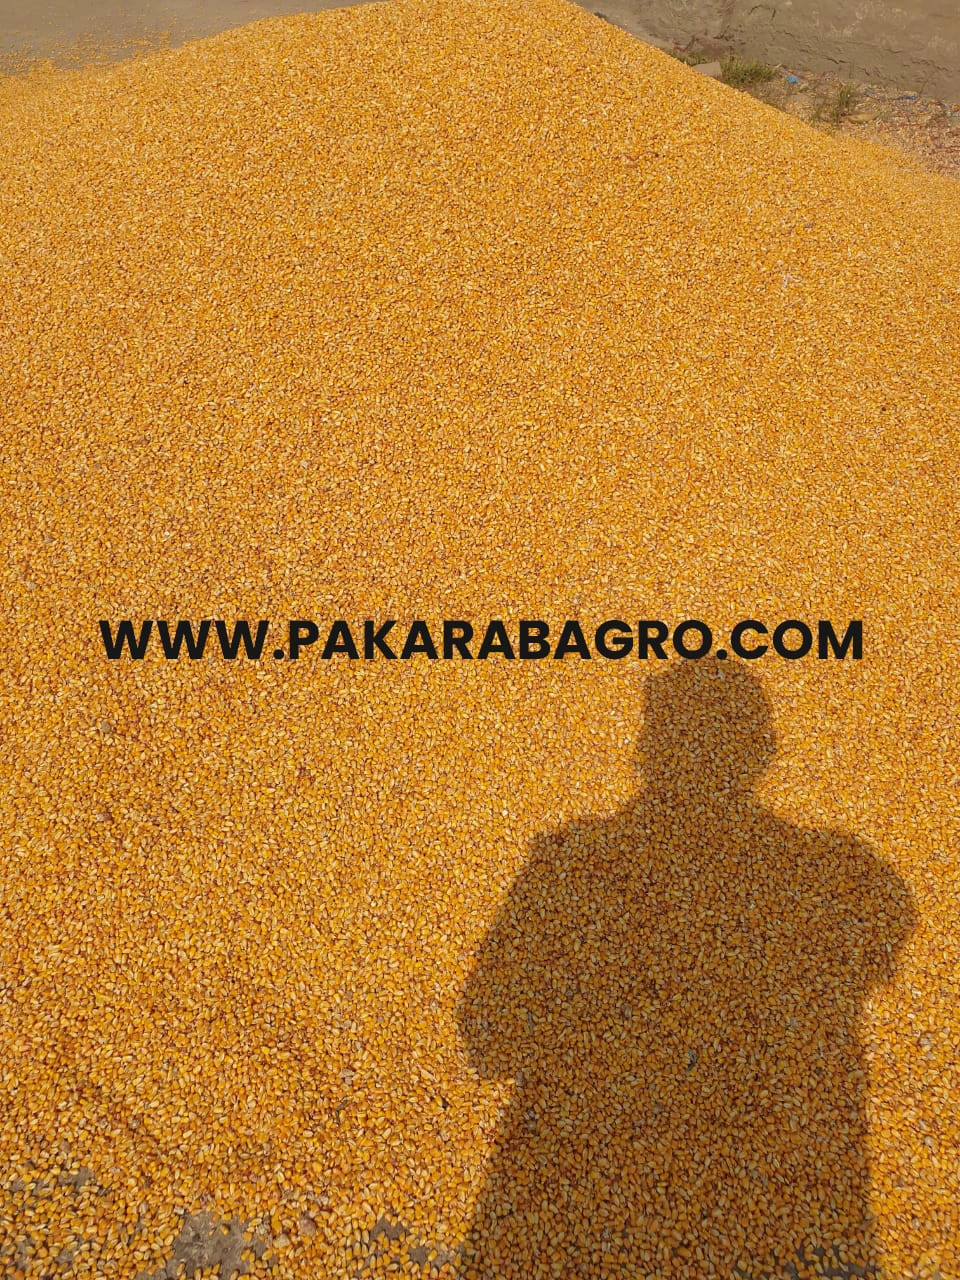 yellow maize, yellow corn, pakistan maize, pakistan yellow corn, corn suppliers in pakistan, maize suppliers in pakistan